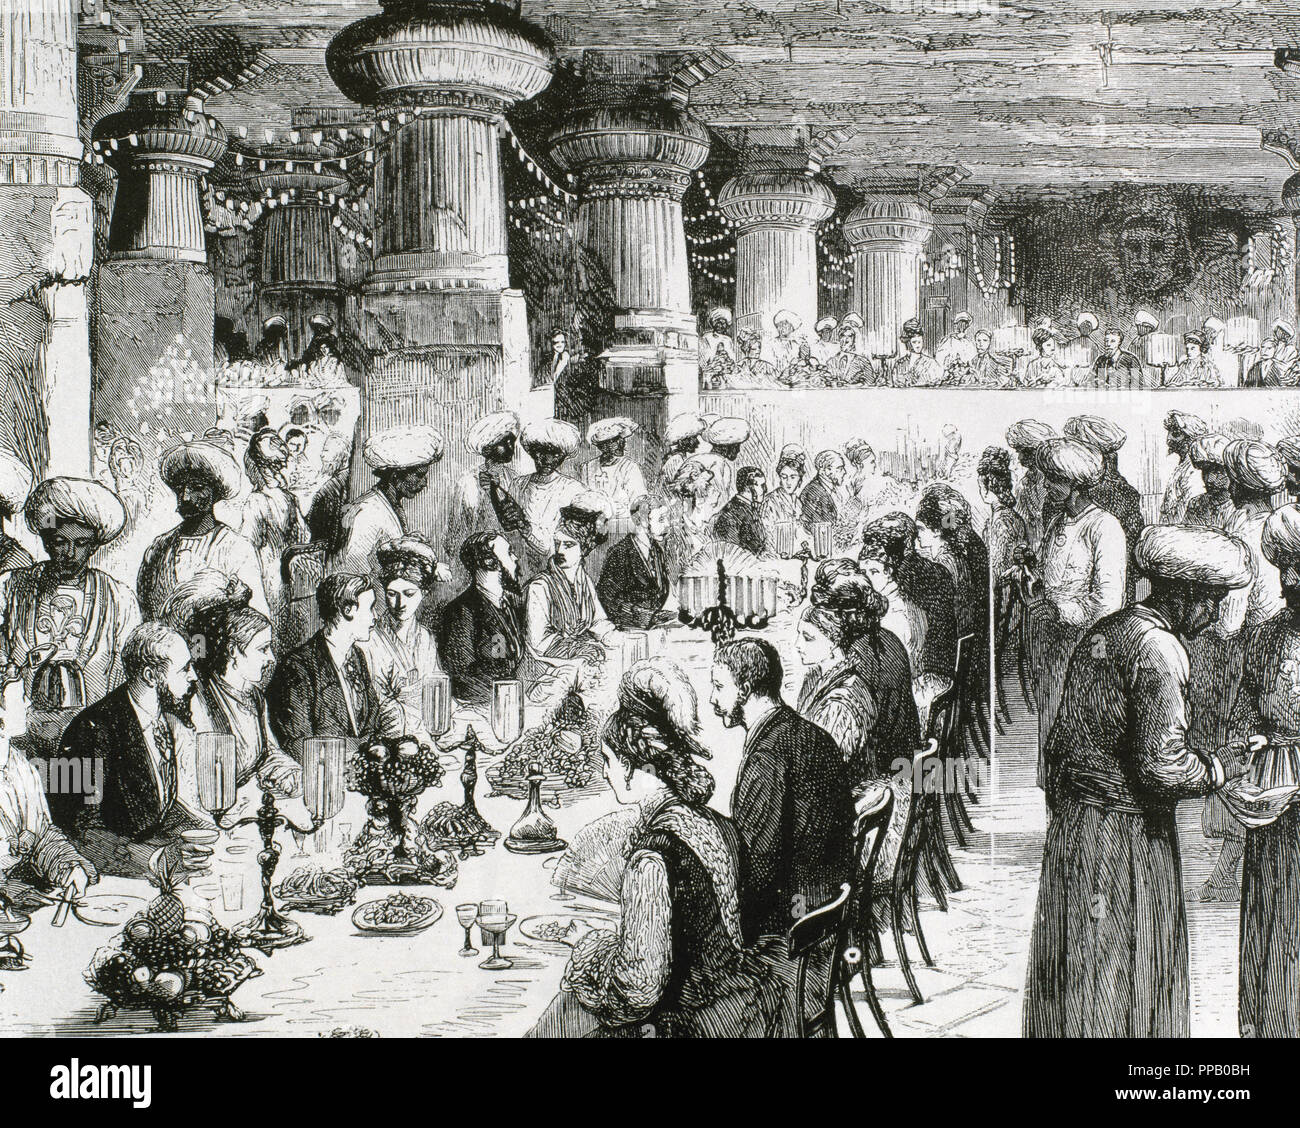 Reisen nach Indien des Prinzen von Wales. Gala Dinner in der unterirdischen Tempel von Elephanta anlässlich des Besuchs des Prinzen. Das 19. Jahrhundert aufgezeichnet. Stockfoto